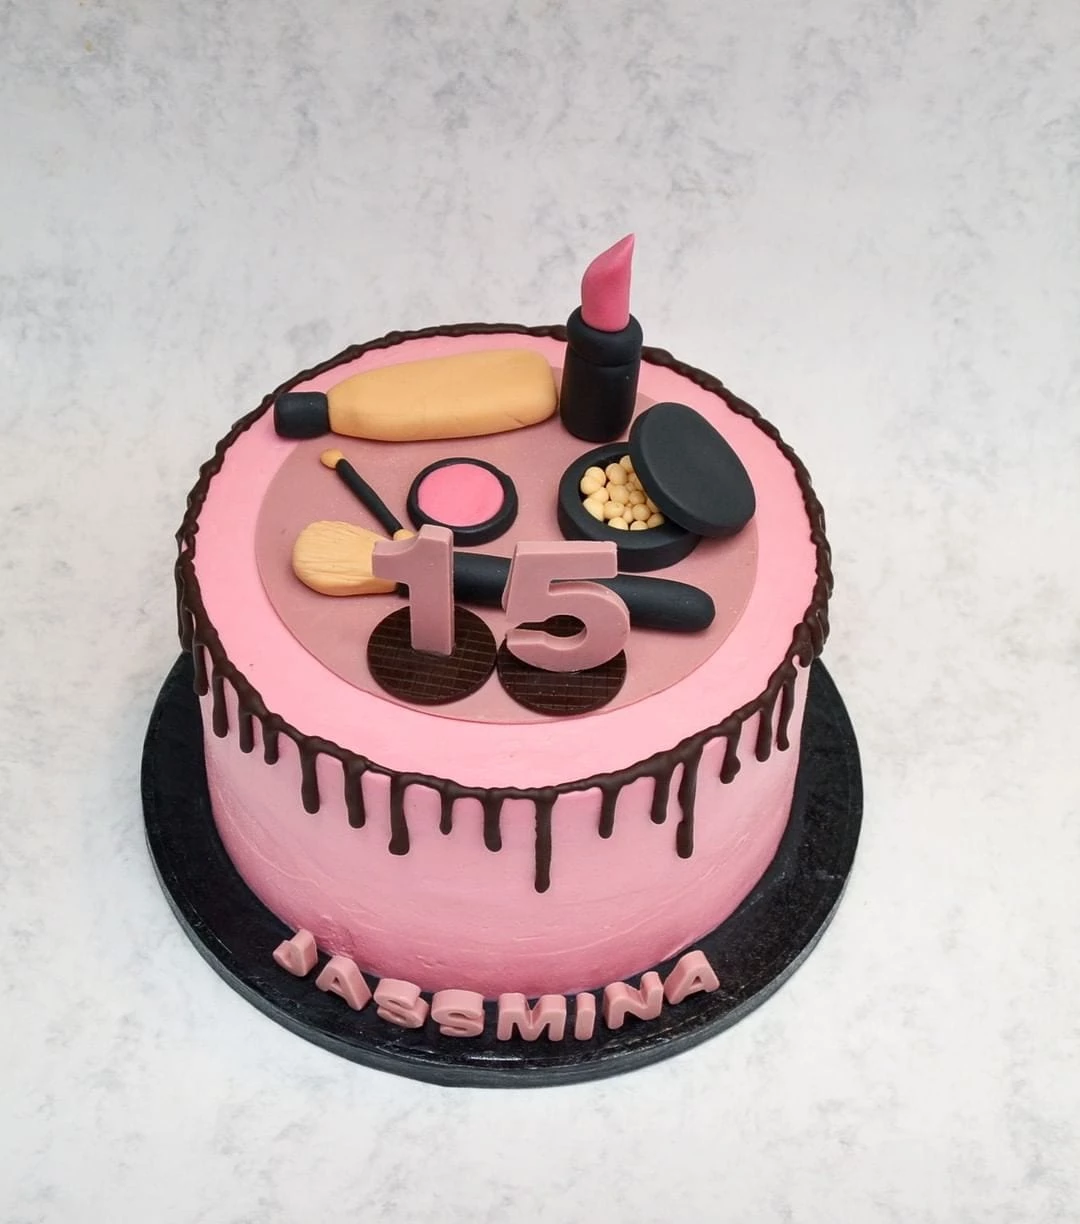 Lindo bolo do tema maquiagem -   Bolos de aniversário de maquiagem,  Bolos de maquiagem, Fotos de bolo de aniversário